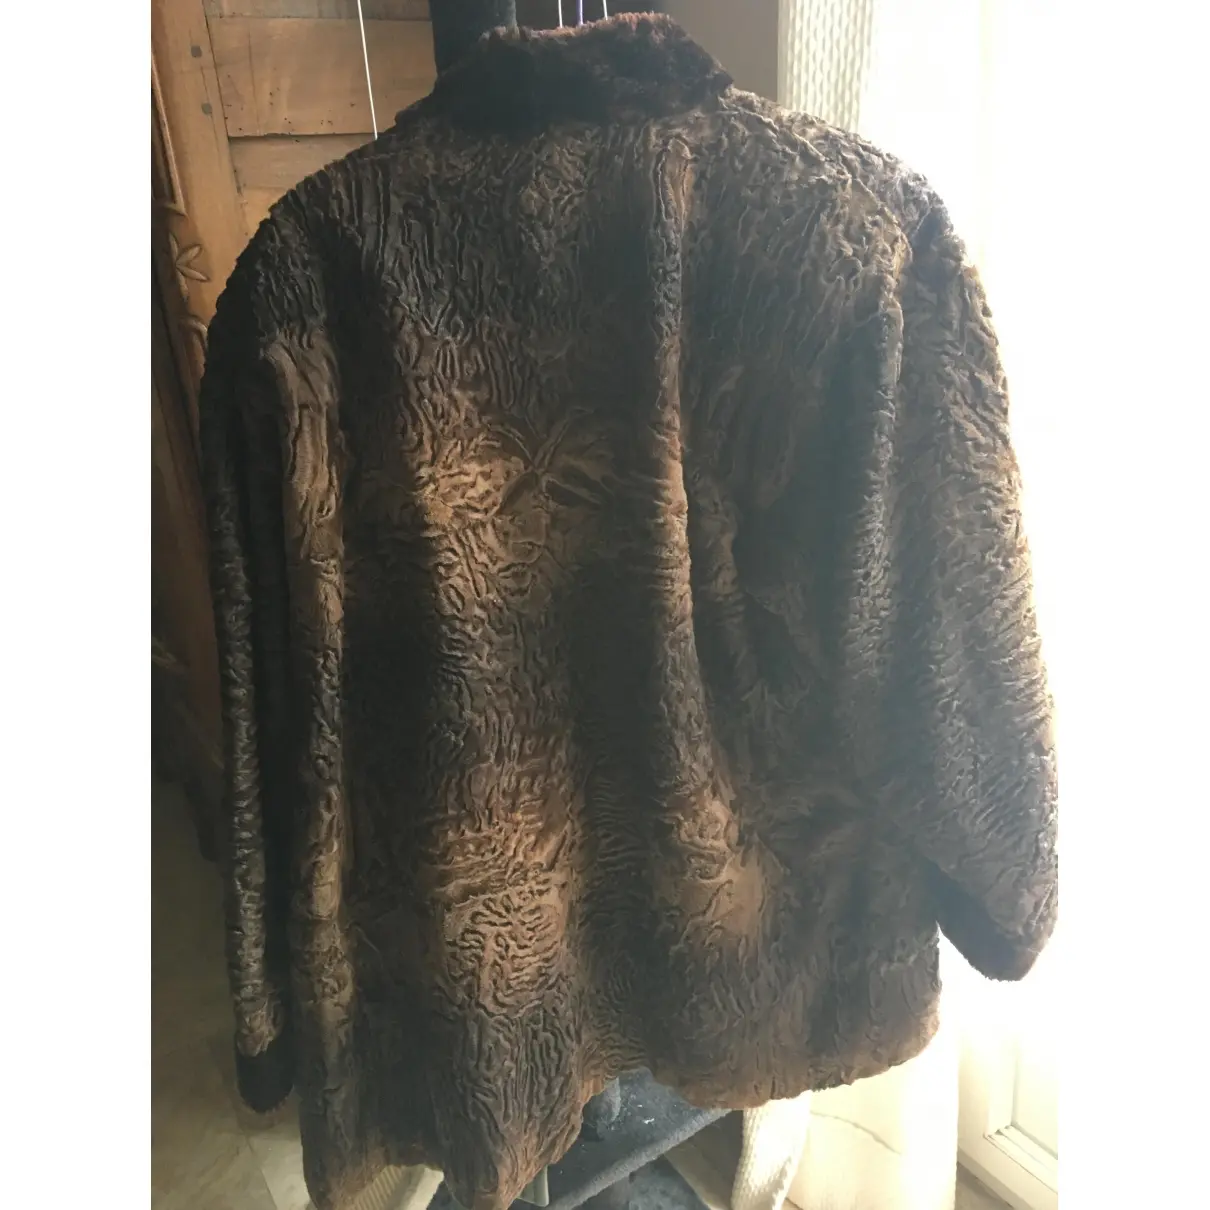 Yves Saint Laurent Astrakhan biker jacket for sale - Vintage